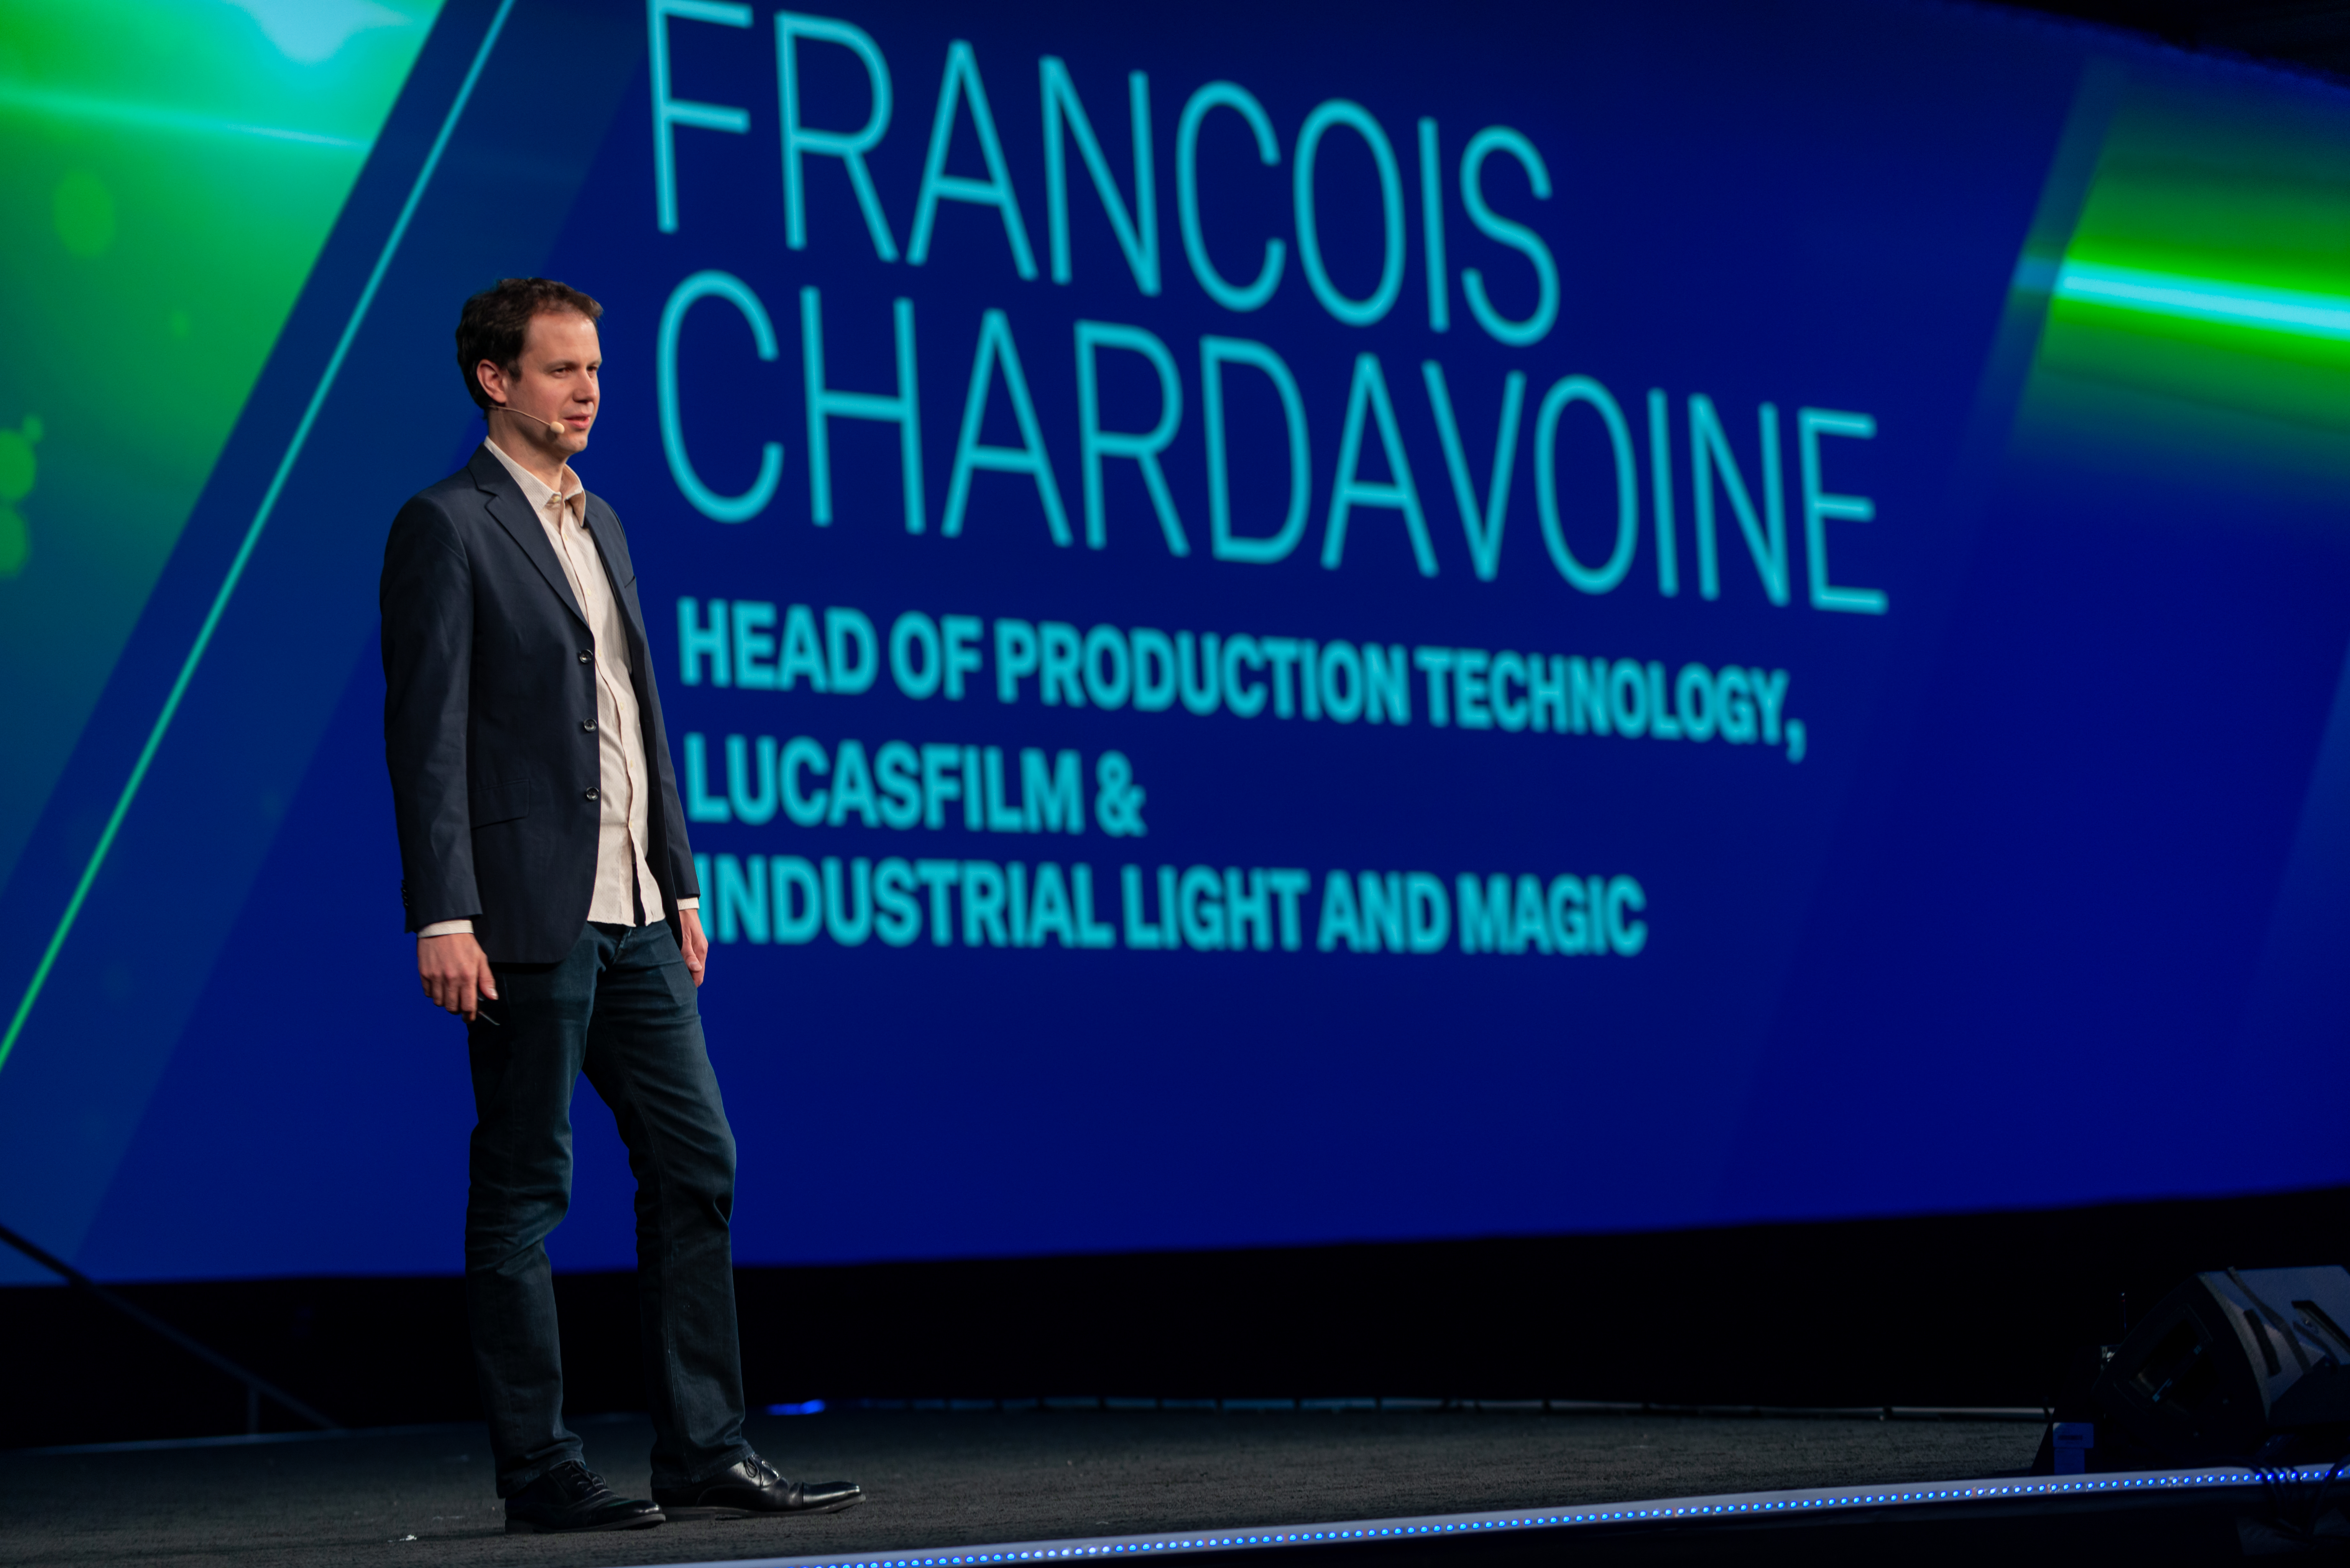           Francois Chardavoine durante su presentación en la conferencia HxGN celebrada en 2019 en Las Vegas